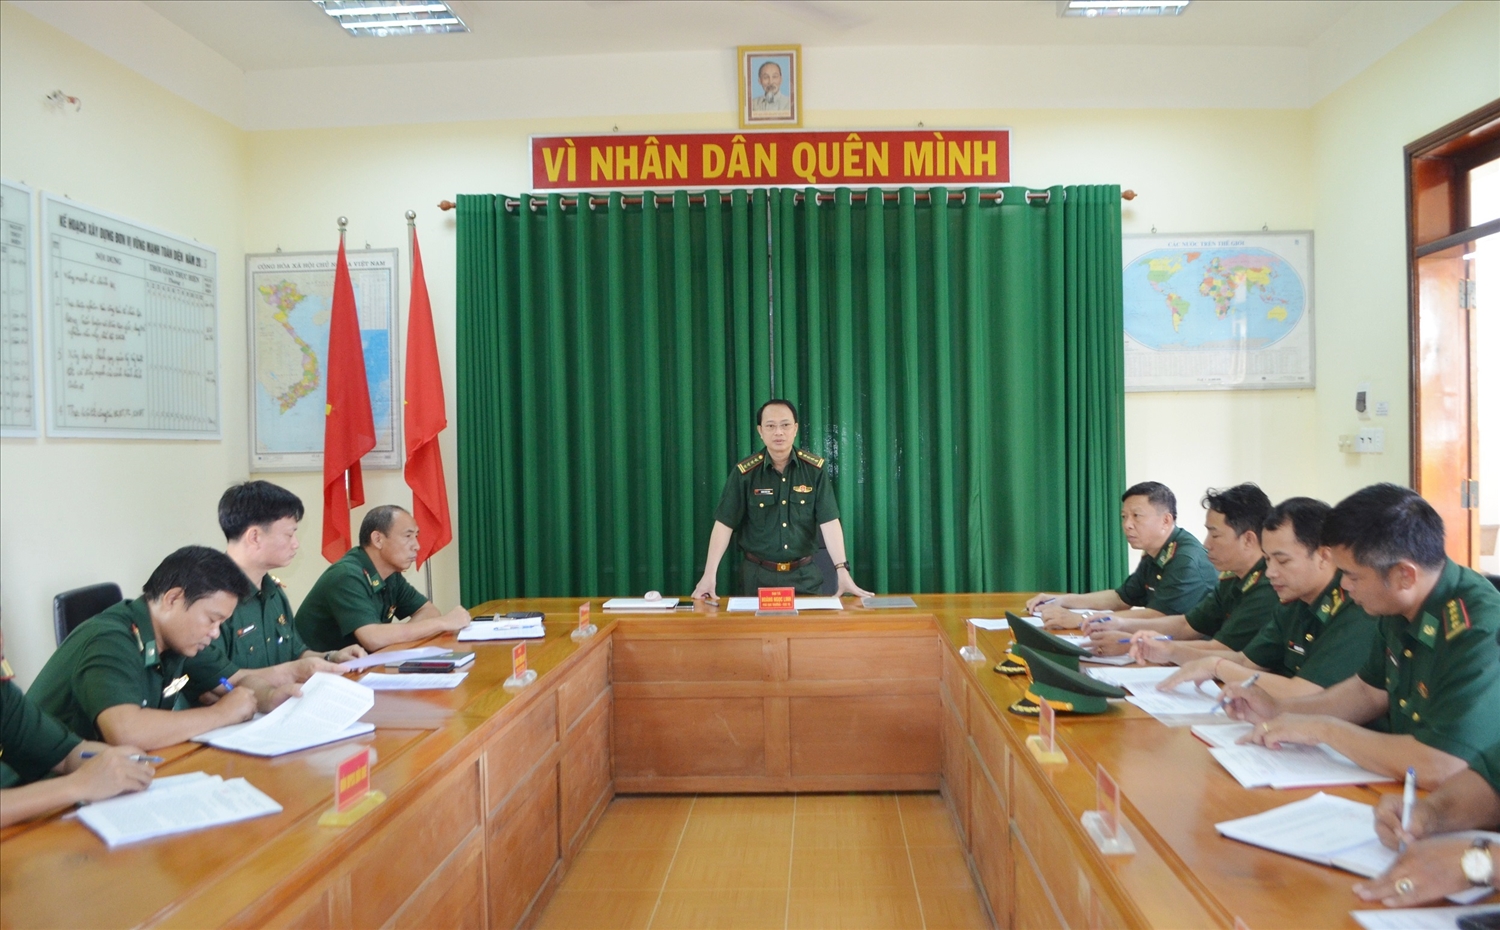 Đại tá Hoàng Ngọc Linh, Phó Cục trưởng Cục trinh sát phát biểu kết luận kiểm tra tại Đồn Biên phòng Cửa khẩu Đắk Ruê